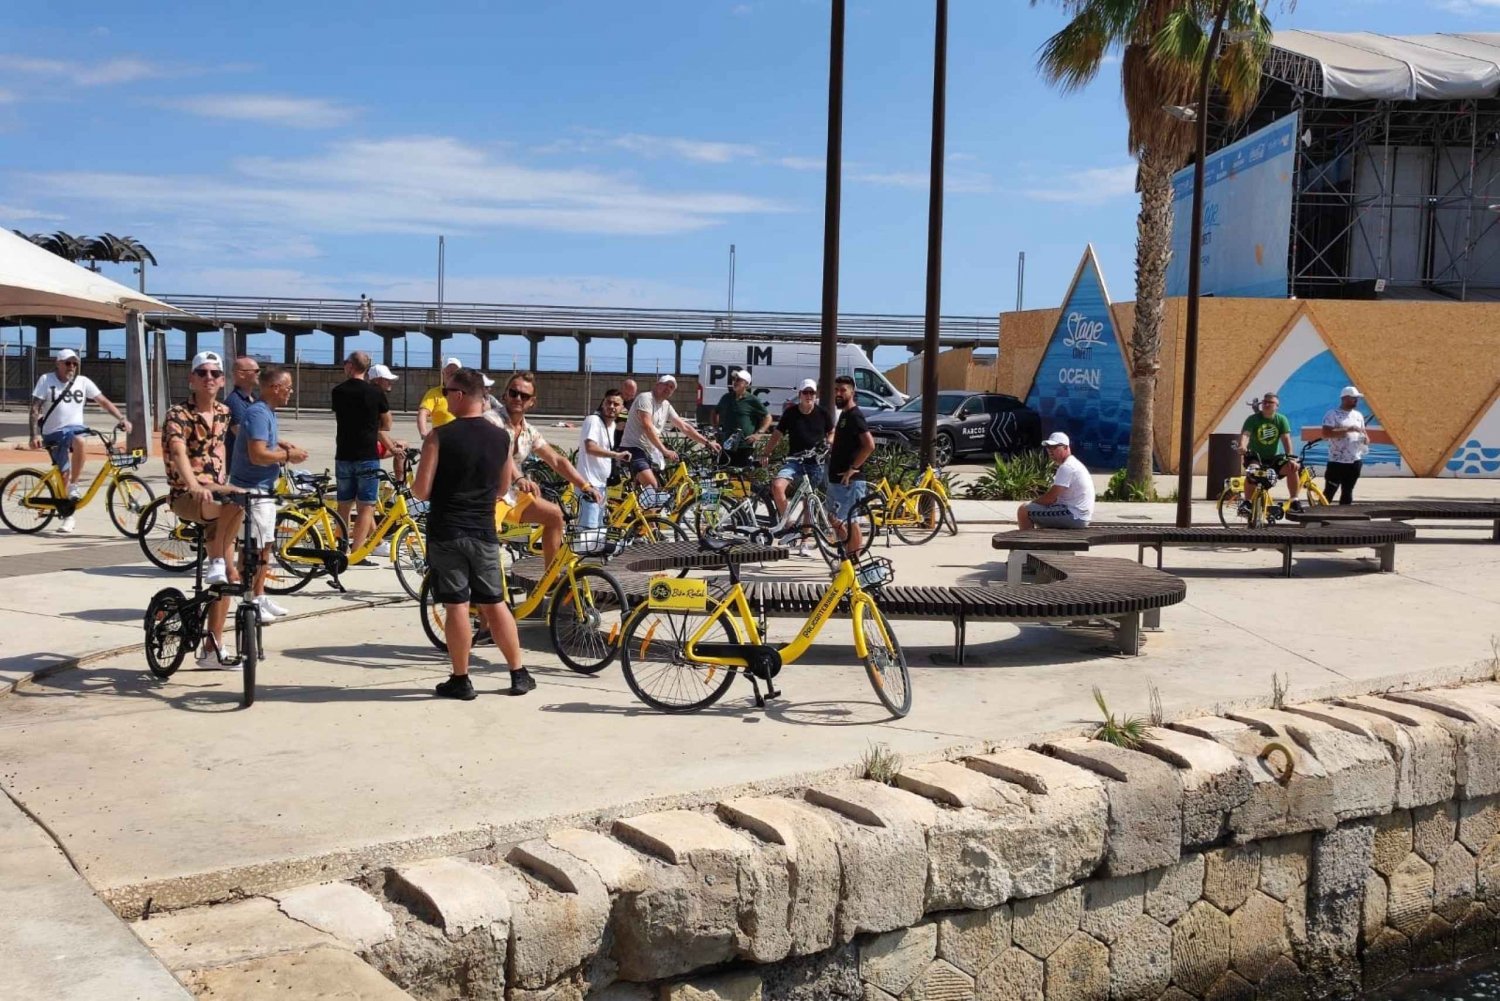 Alicante: City and Beach Bike Tour